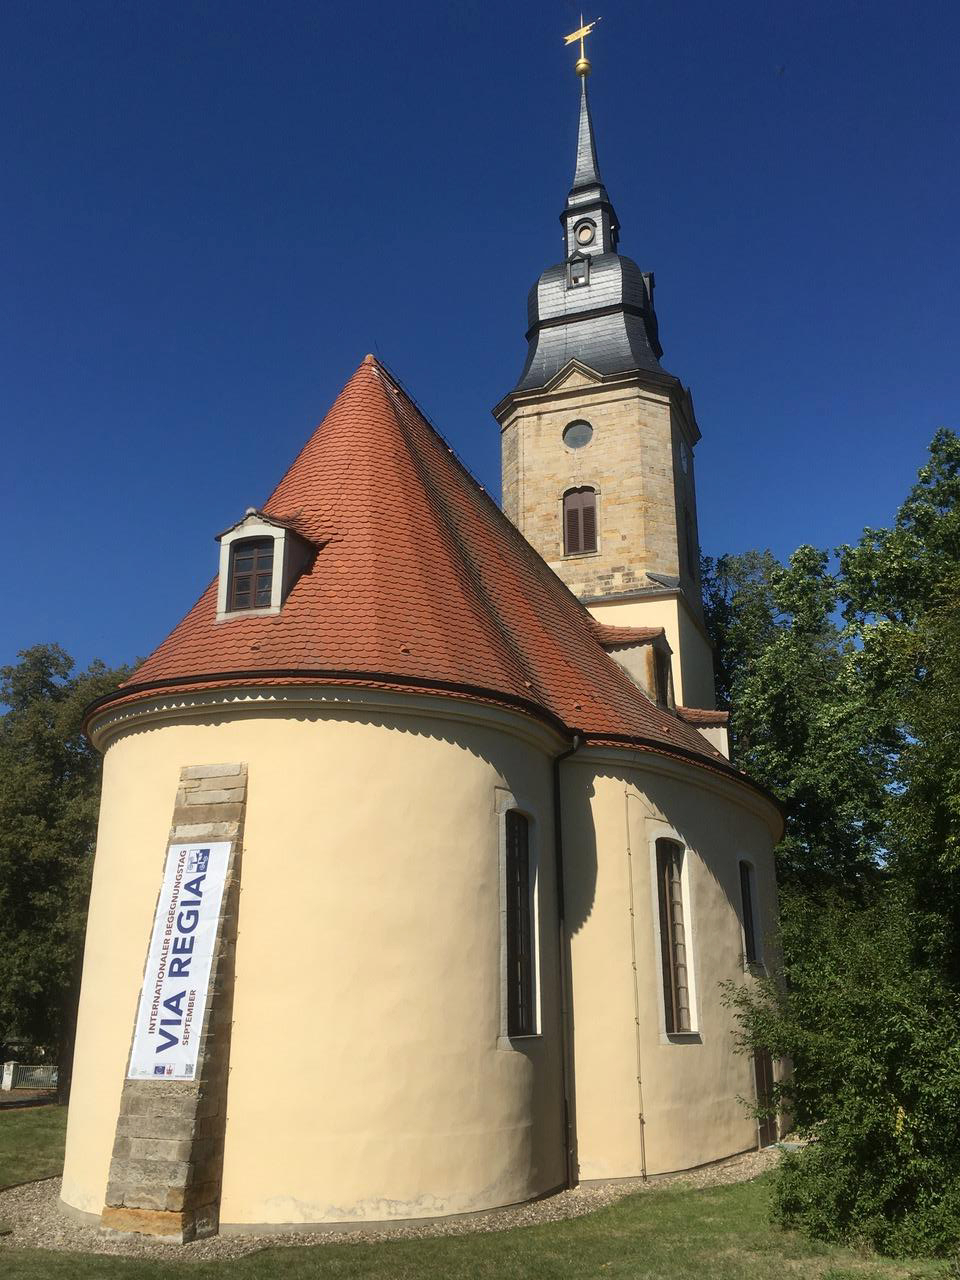 Historische Schlosskirche Jahnishausen